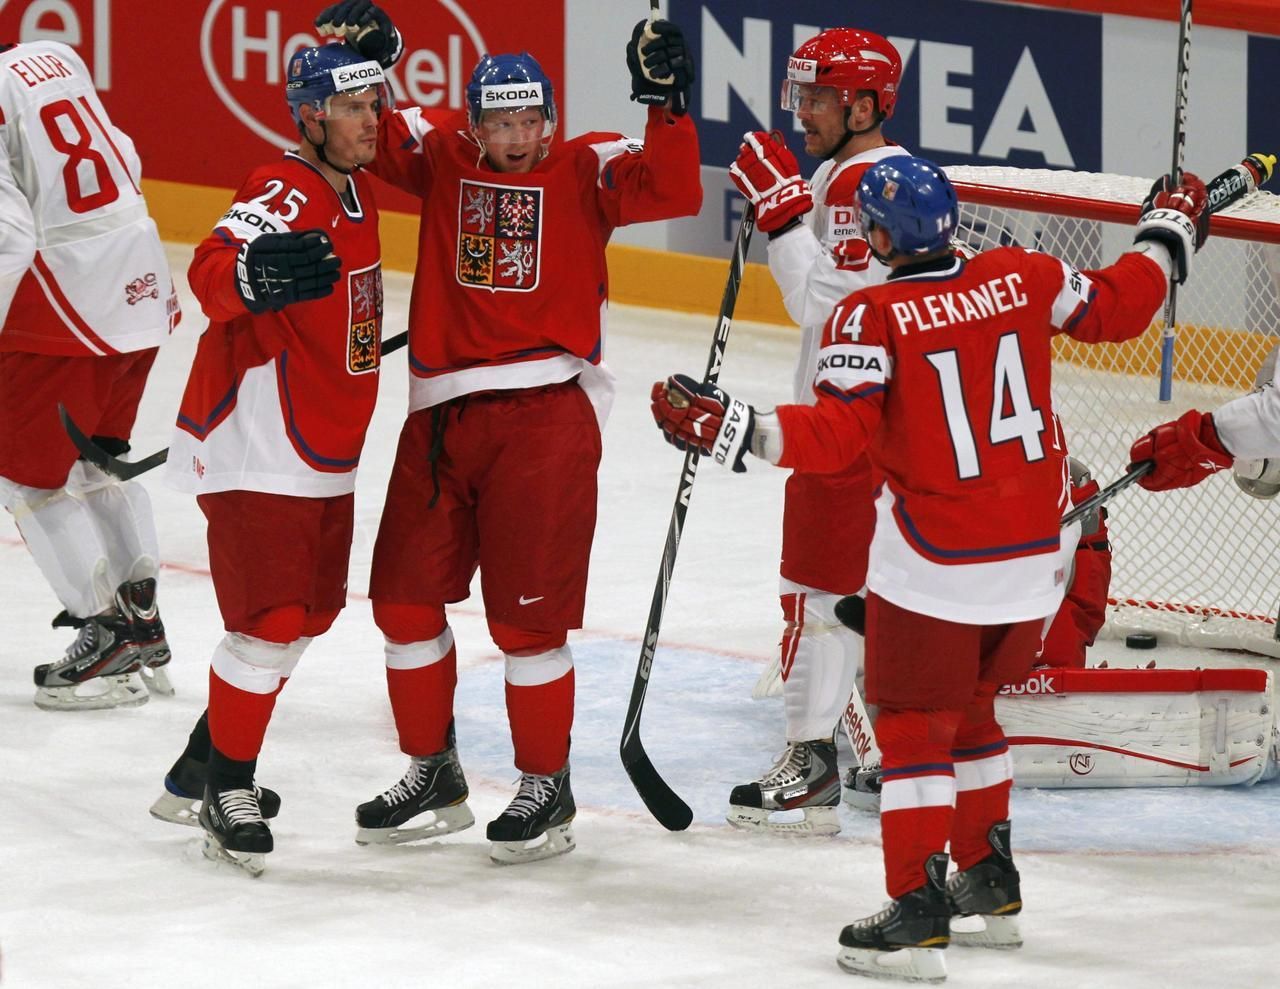 MS v hokeji 2012: Česko - Dánsko (Krajíček, Hemský, Plekanec, radost)